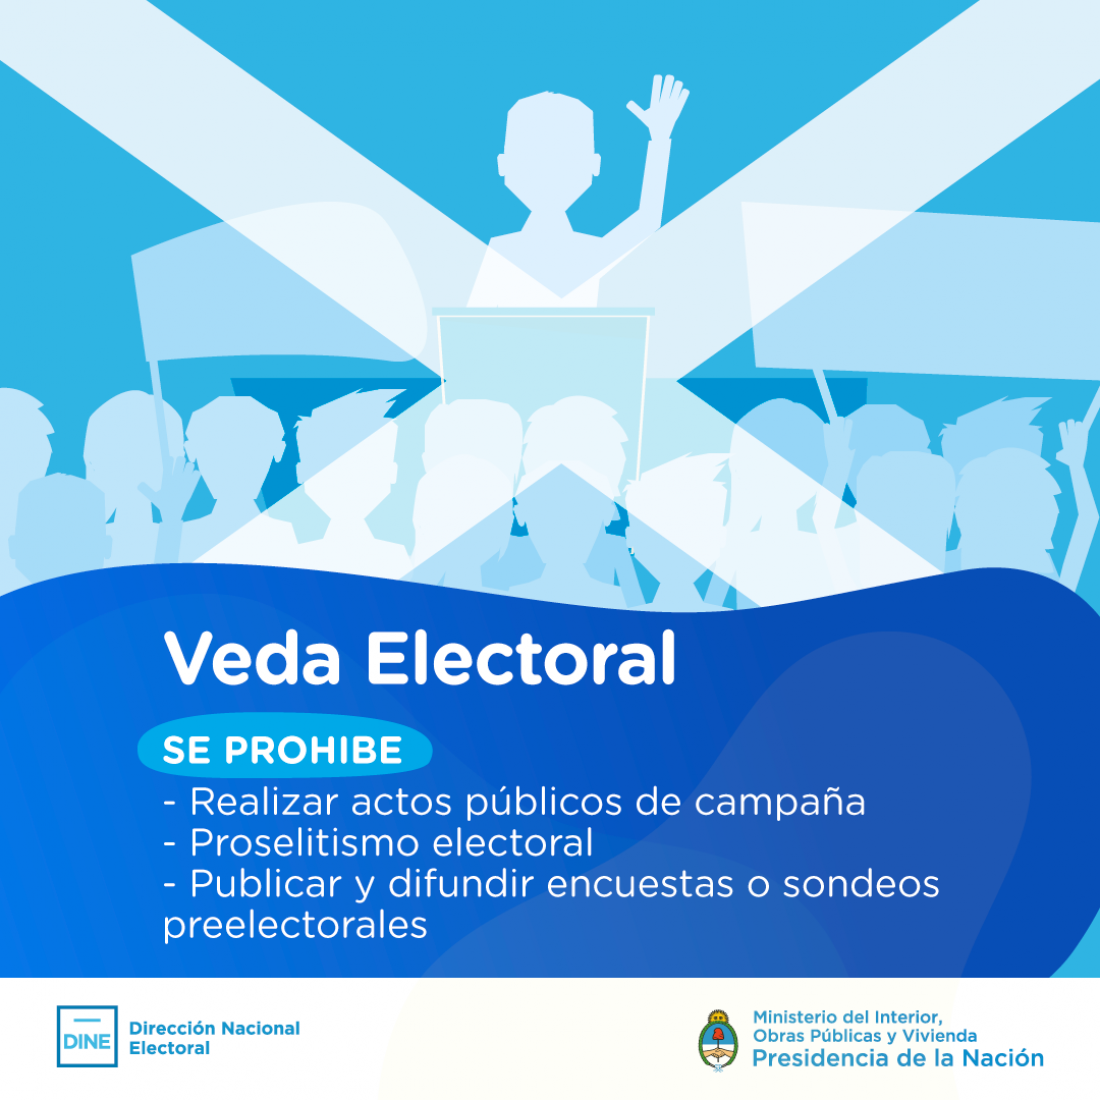 Comenzó la veda electoral en Jujuy y dos provincias más